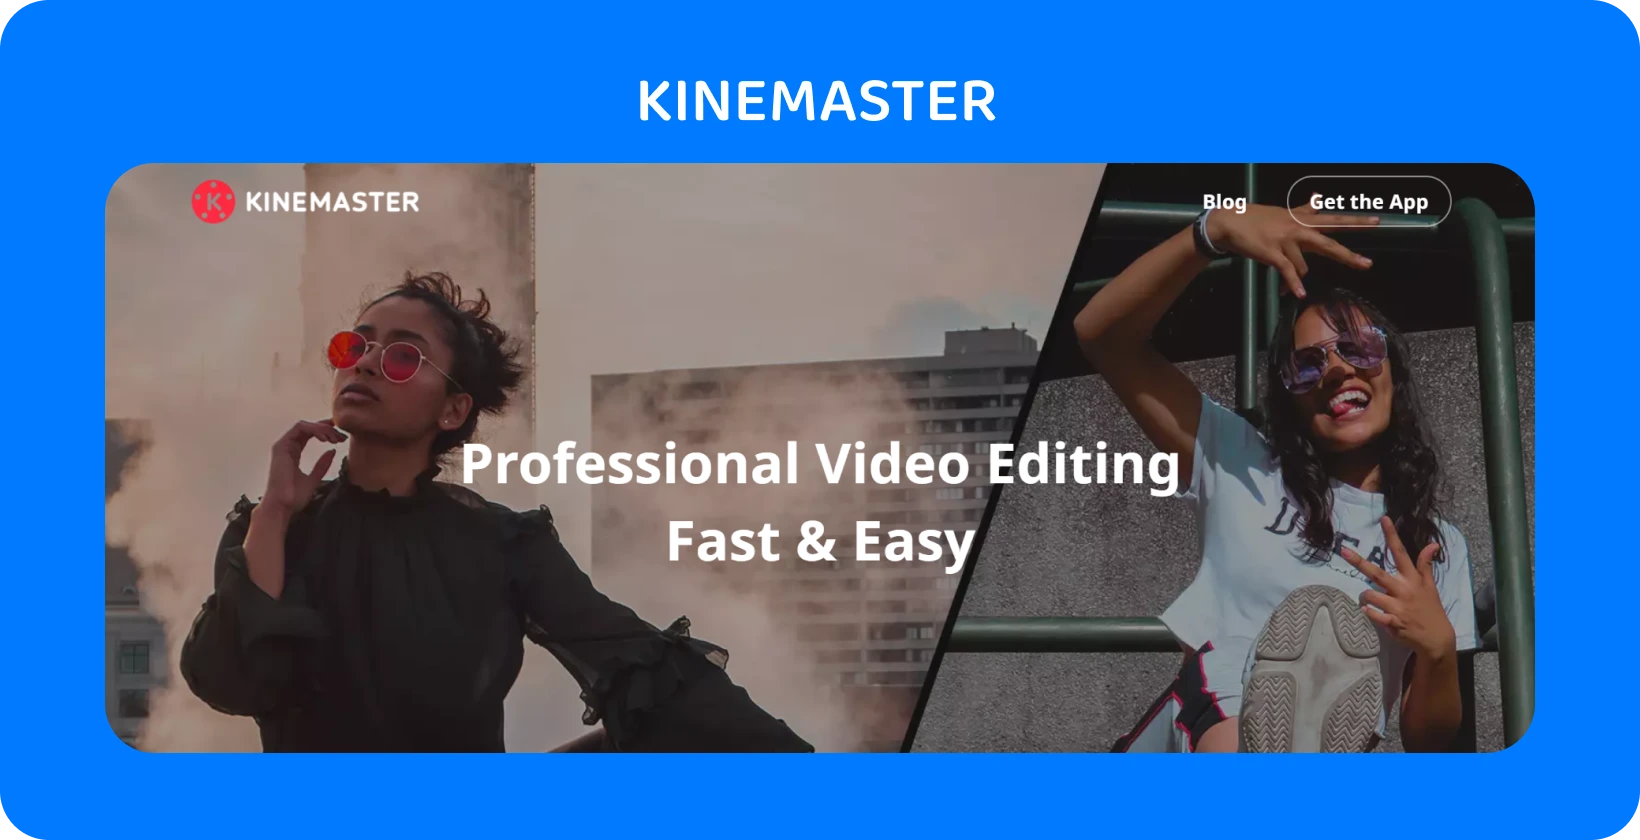 KineMaster anúncio de aplicativo com dois modelos posando, destacando a edição de vídeo profissional que é rápida e fácil.